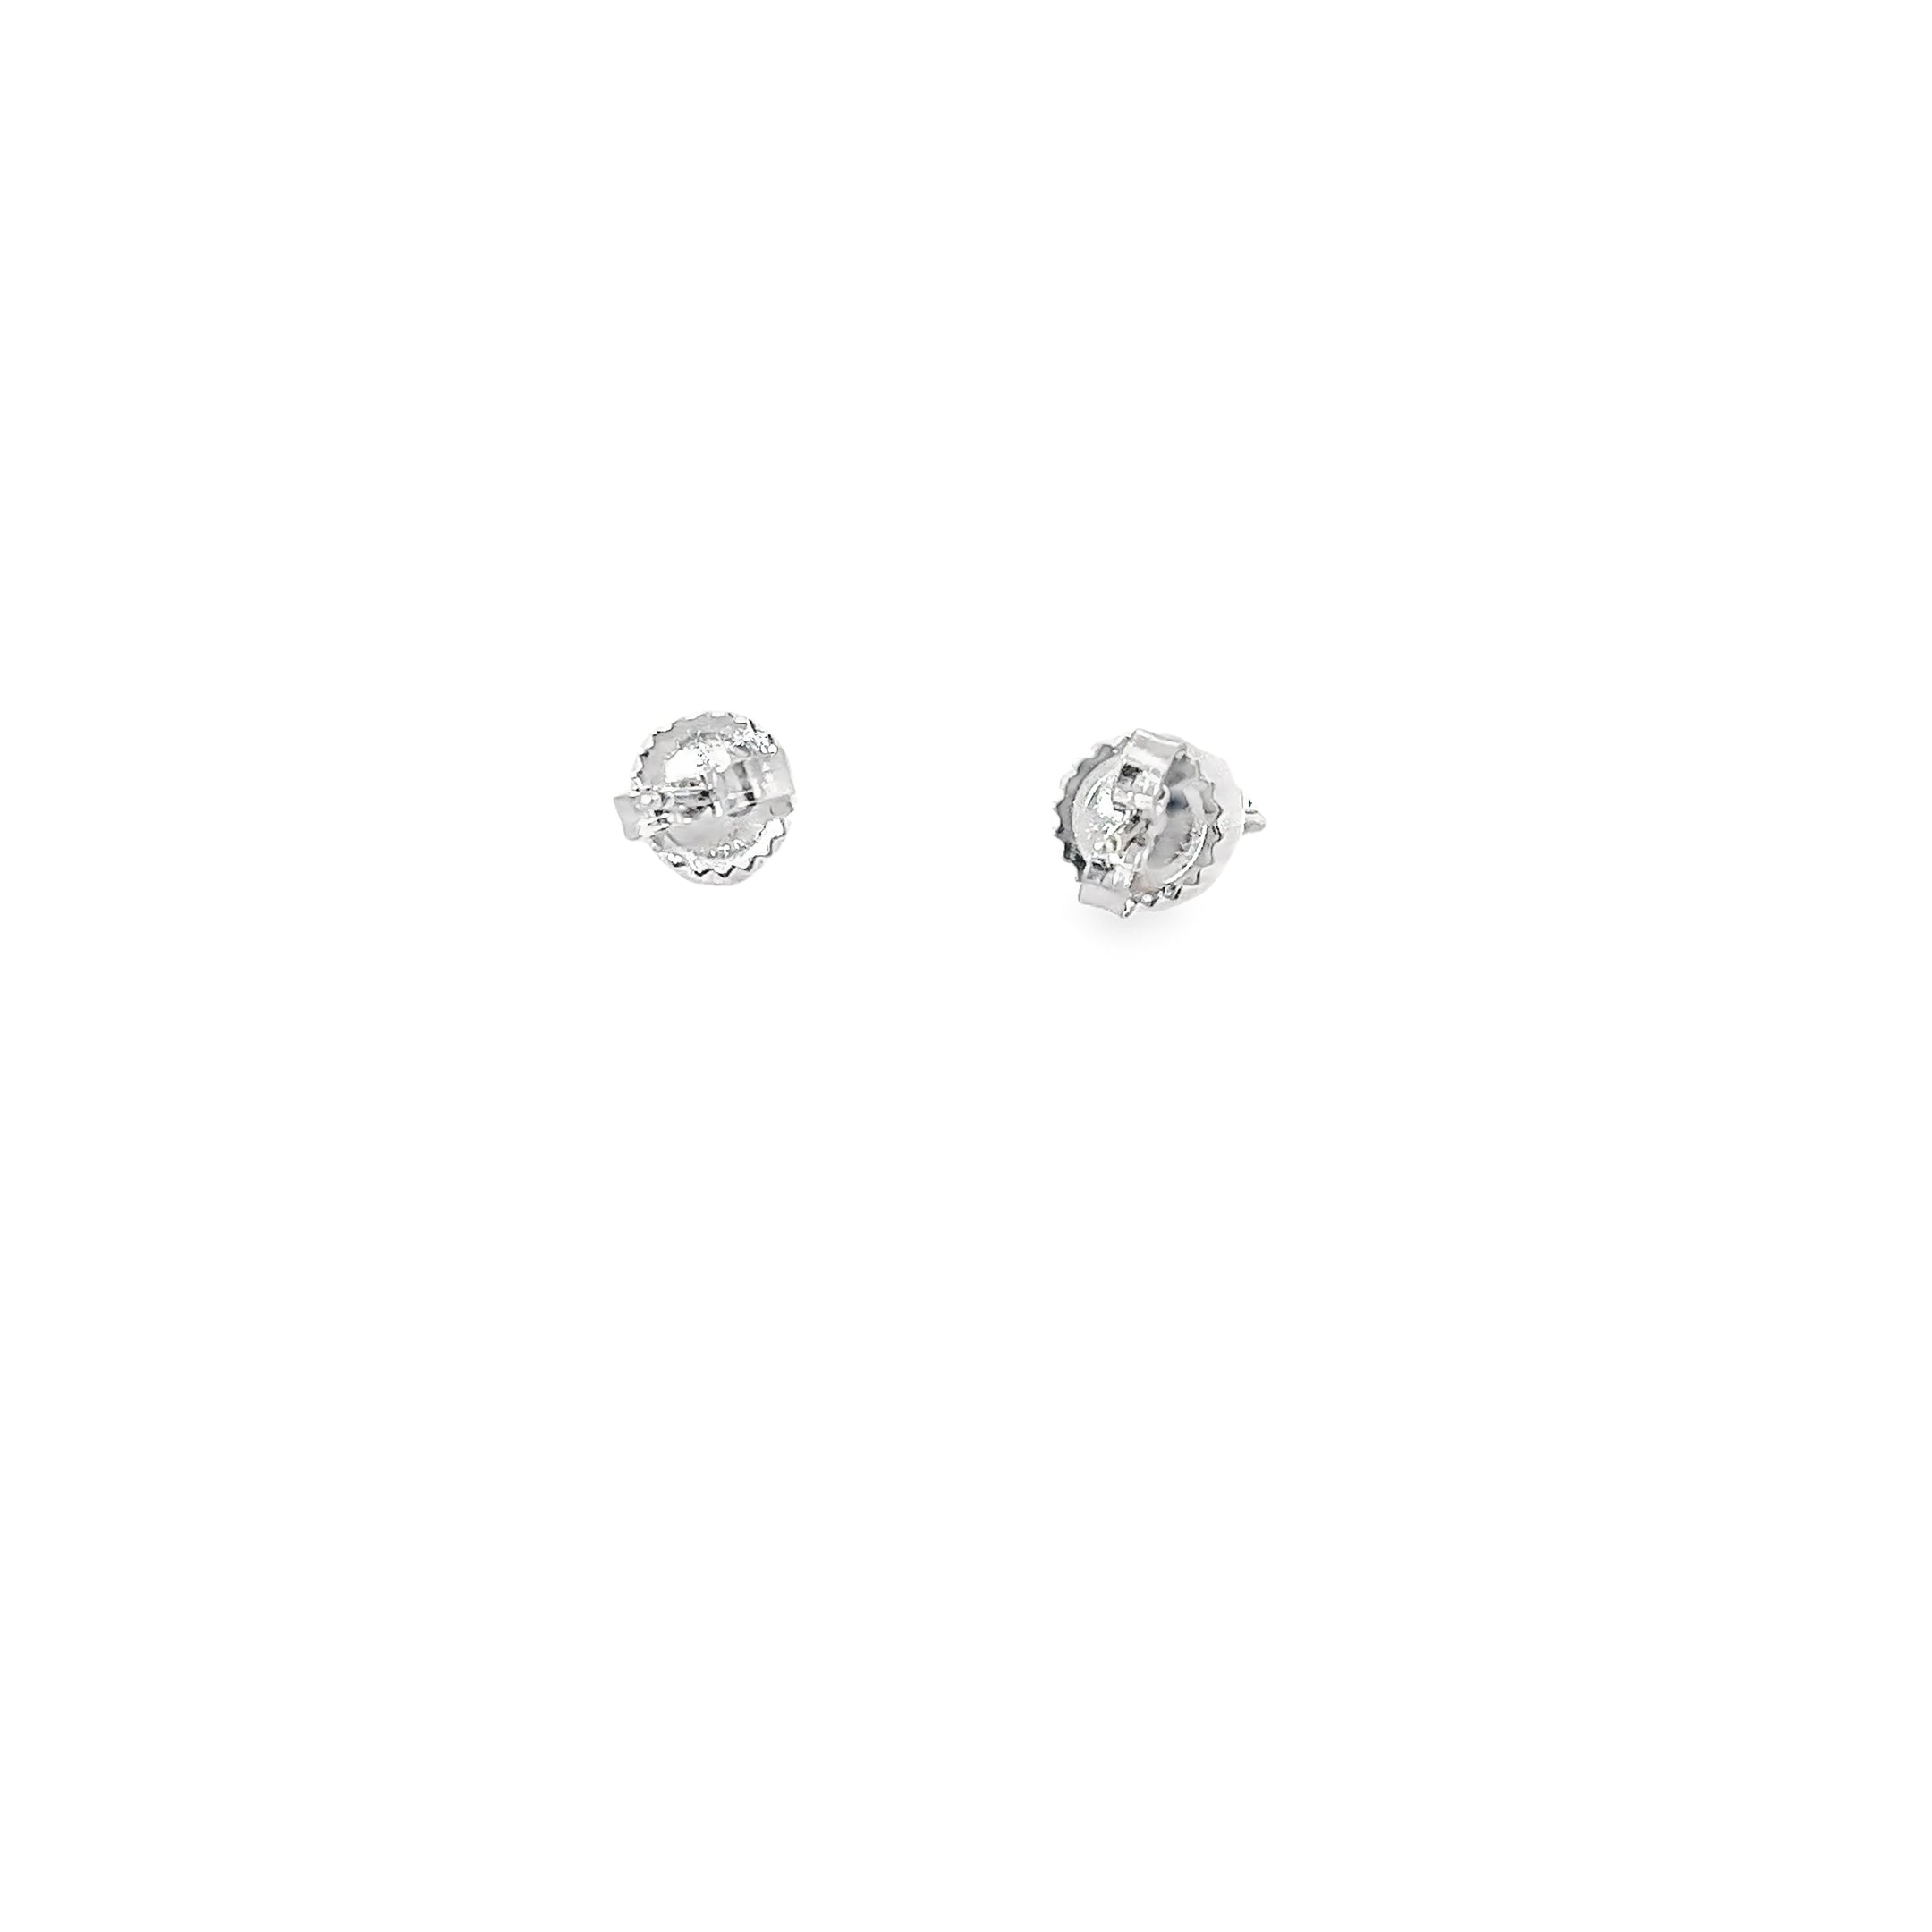 Ladies 14k white gold Diamond Stud Earrings